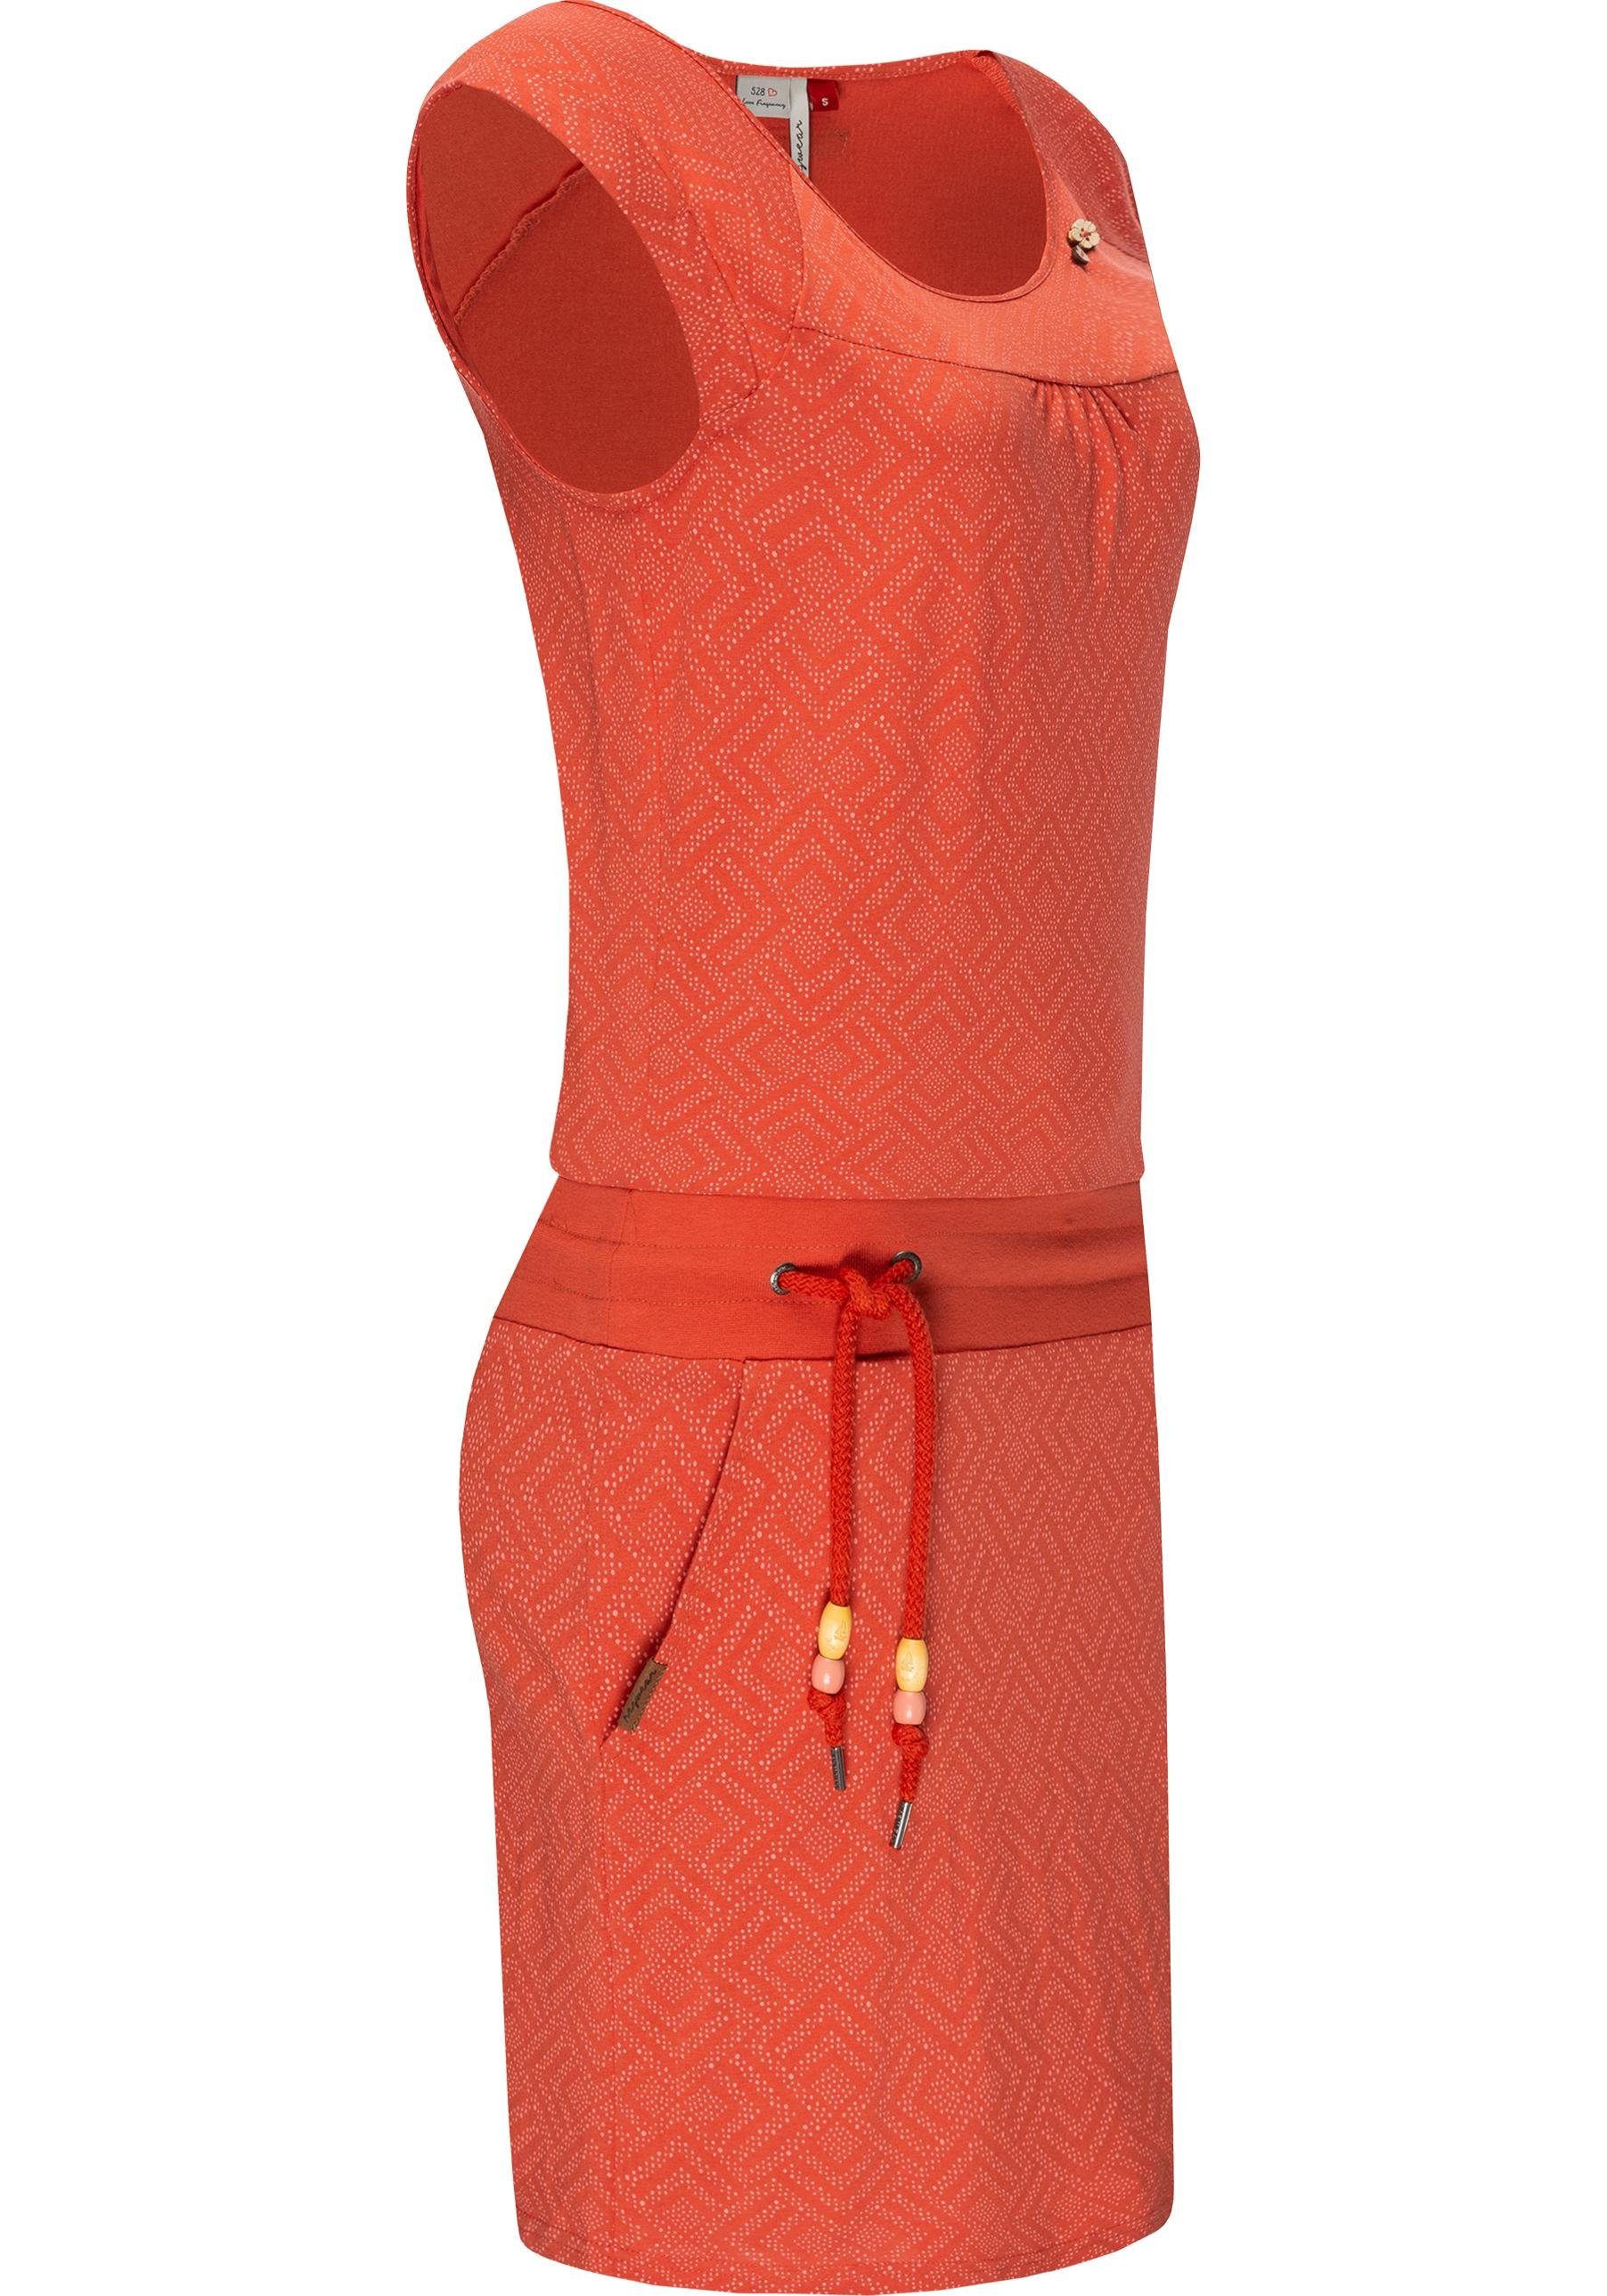 Ragwear Sommerkleid Penelope leichtes Print ziegelrot Baumwoll Kleid mit